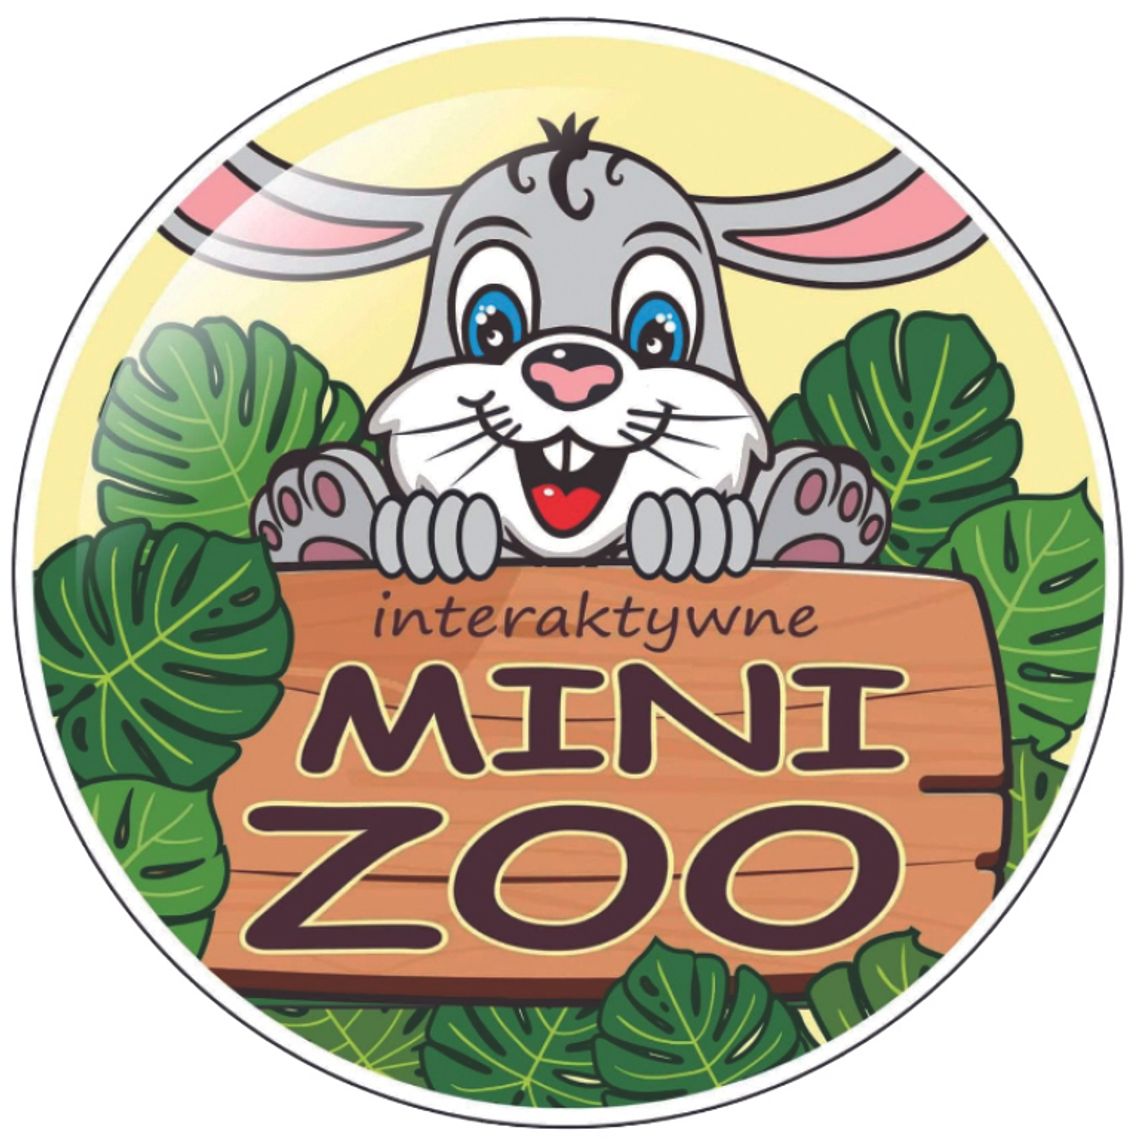 PERŁY BIZNESU 2022:  Interaktywne Mini Zoo „Przyjazny zwierzak” (Mikroprzedsiębiorstwo)